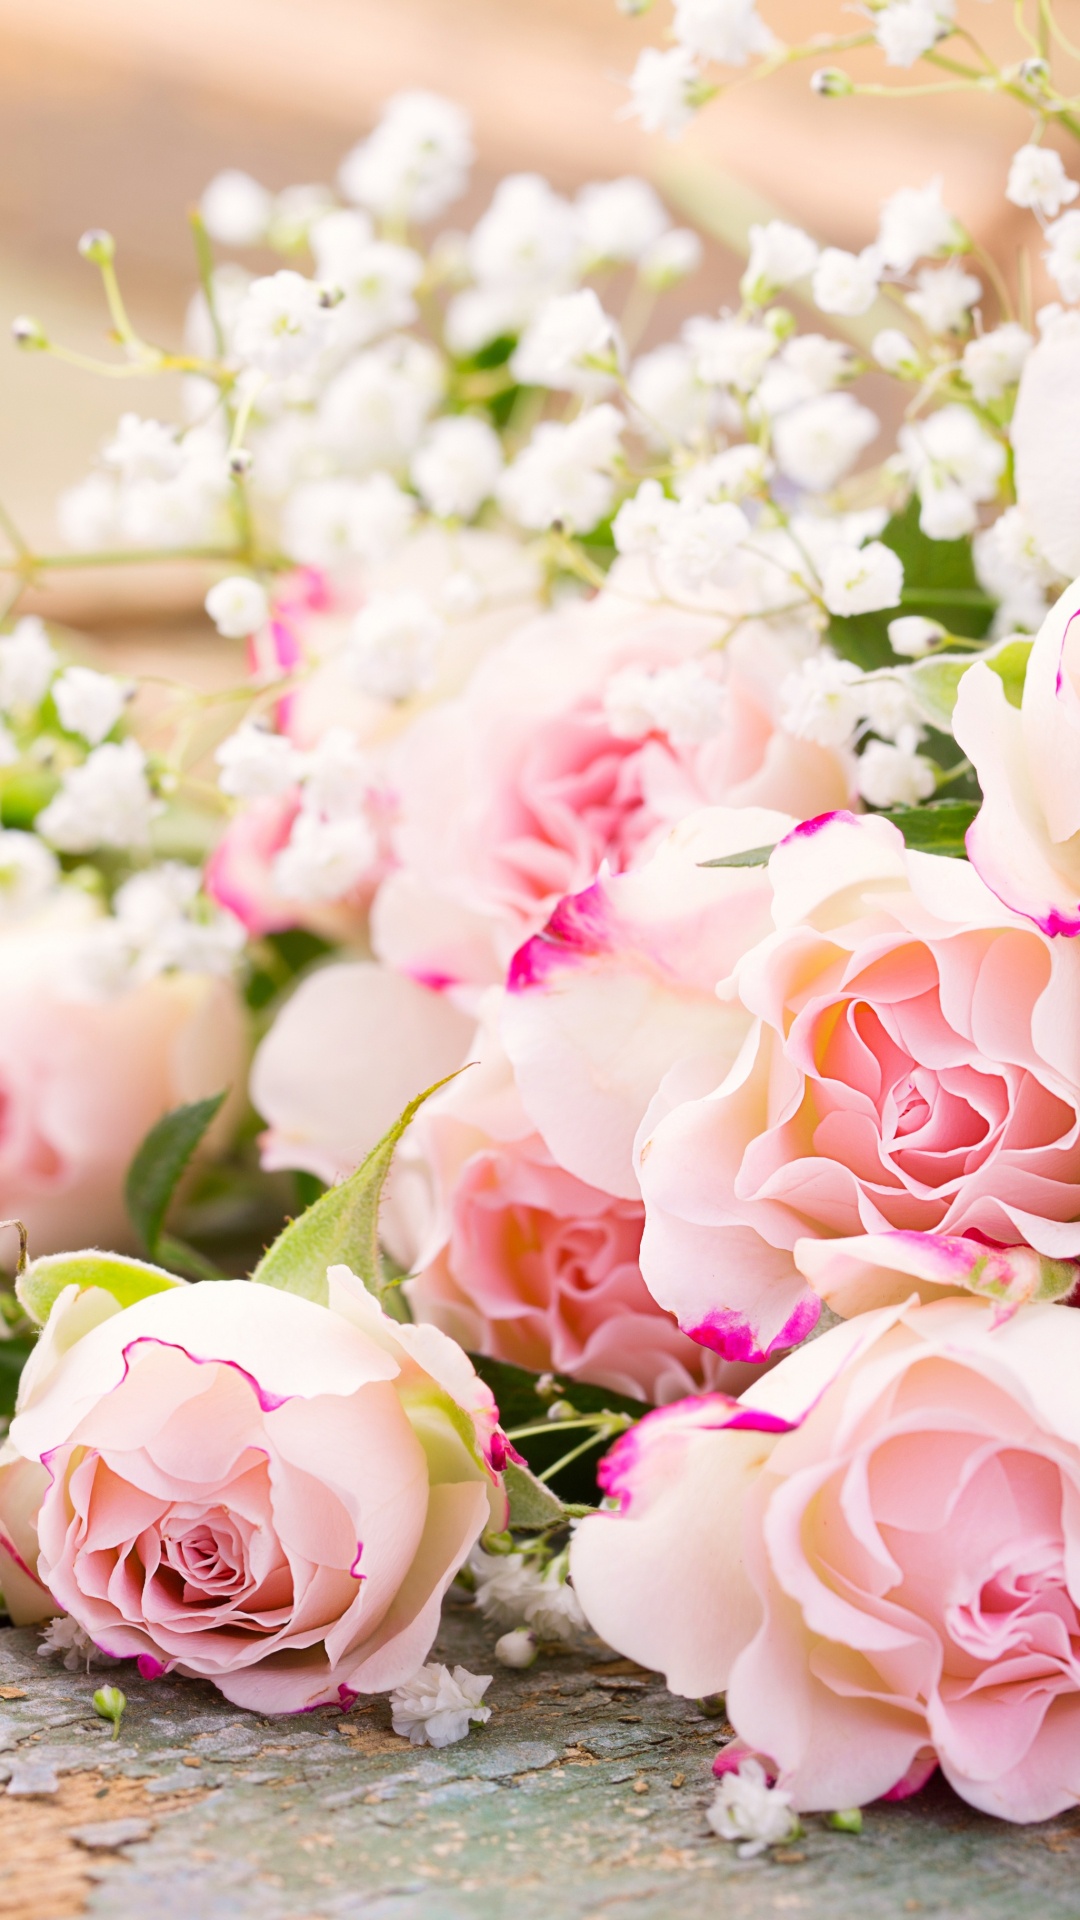 玫瑰花园, 粉红色, 花安排, 花卉设计, 切花 壁纸 1080x1920 允许